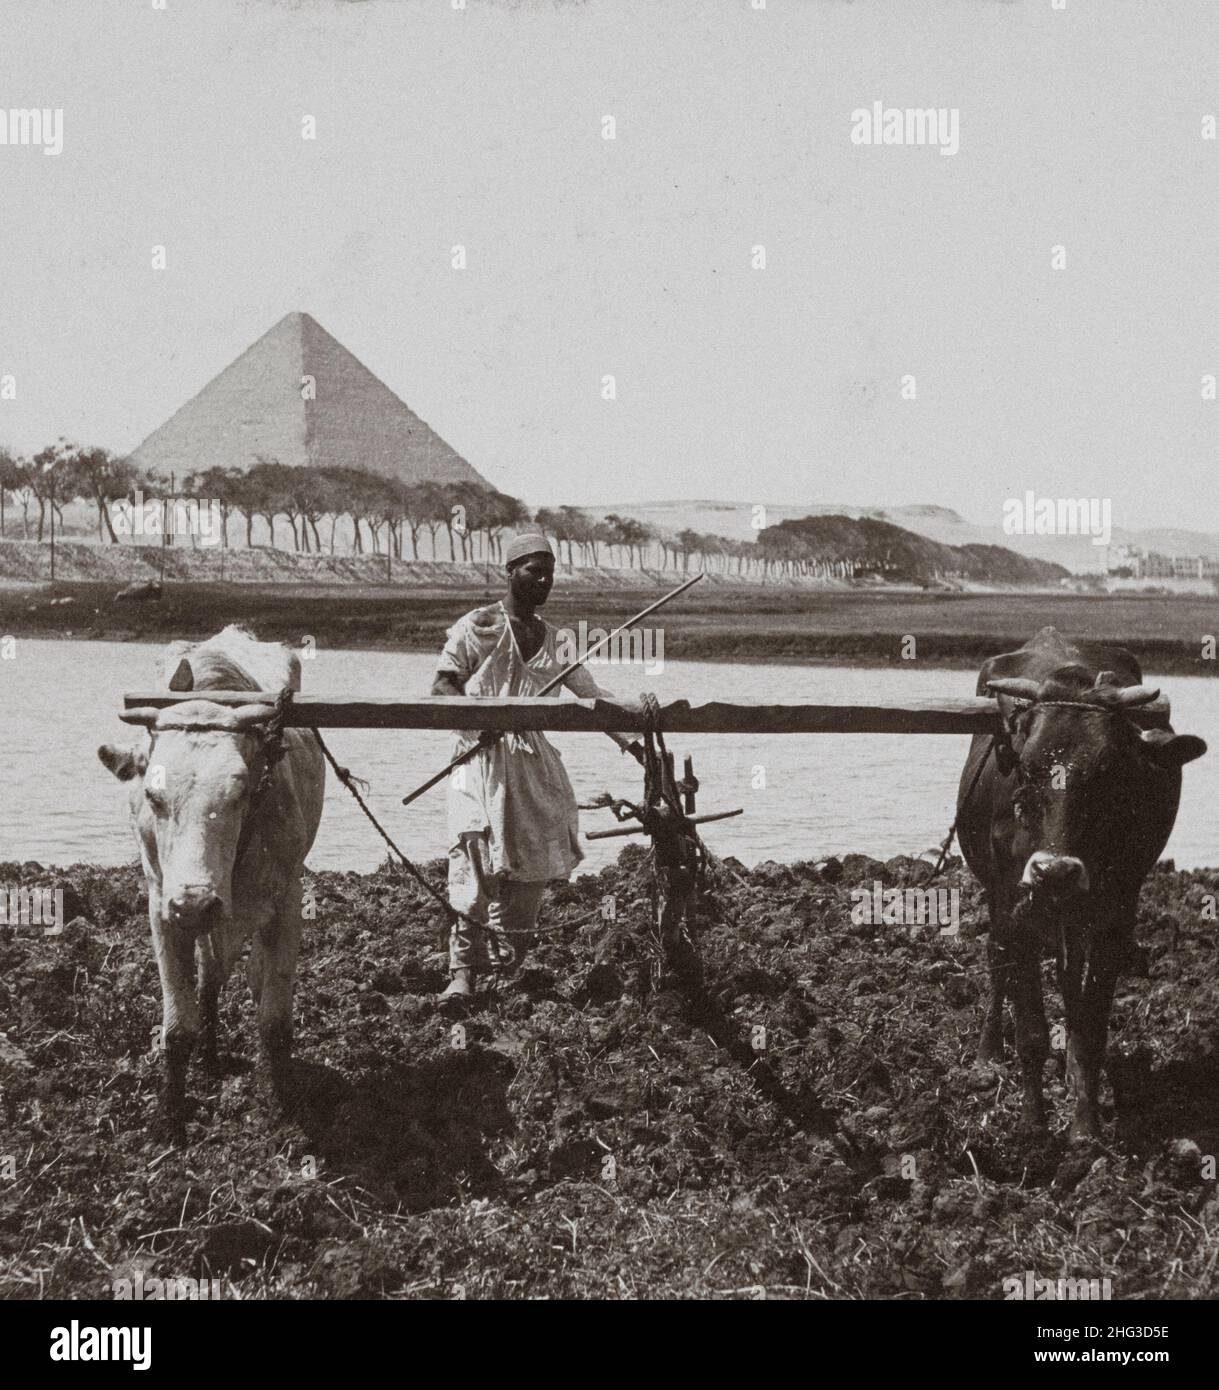 Vintage-Foto der ägyptischen Fellah mit Pyramiden von Gizeh auf dem Hintergrund. Bodenbearbeitung wie in alten Tagen, Ägypten. 1899 Stockfoto